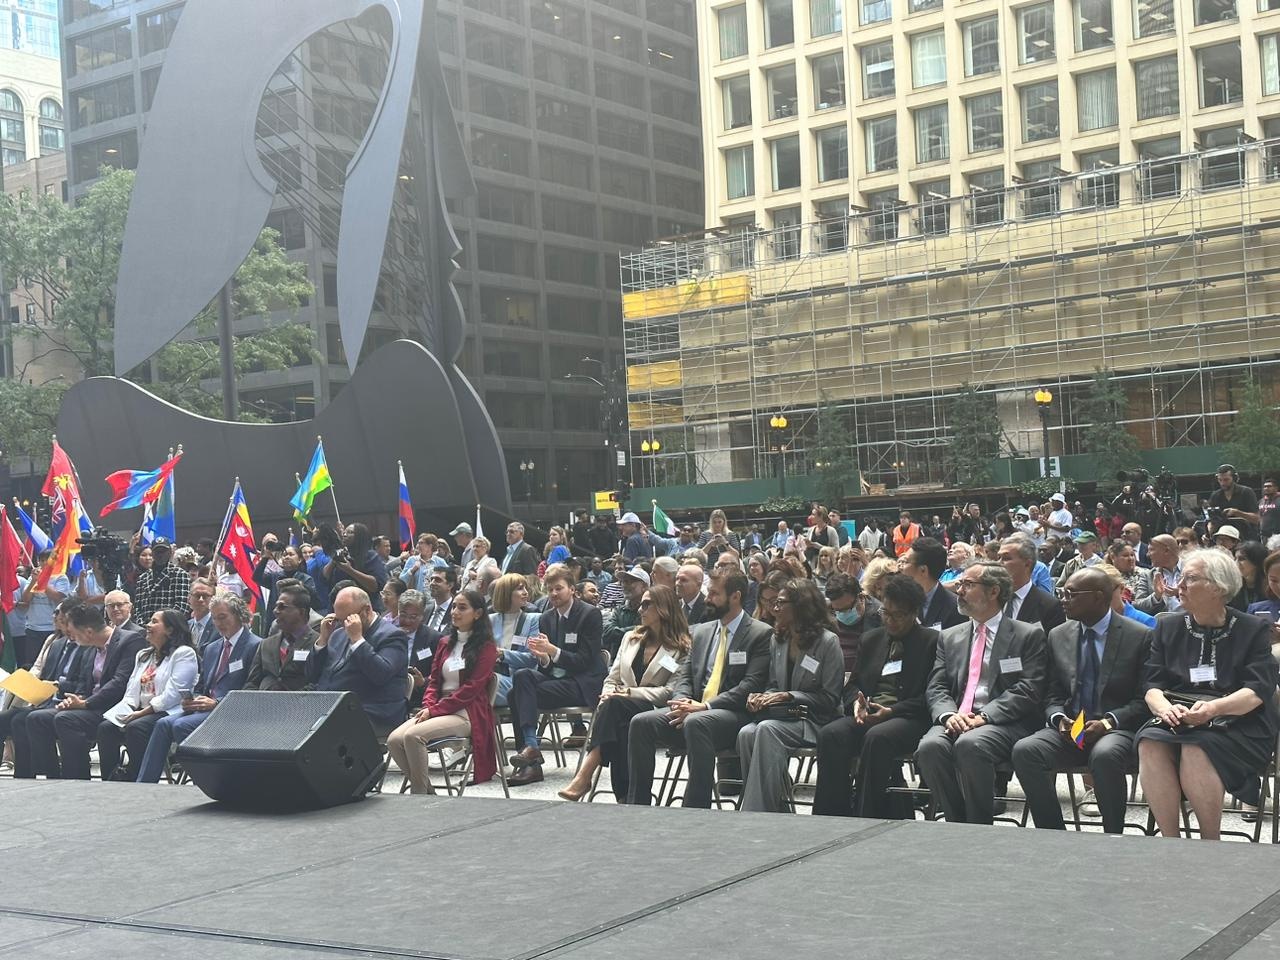 Cónsul de Colombia en Chicago, Diego Angulo Marínez, participó en la ceremonia del Día Mundial de la Paz